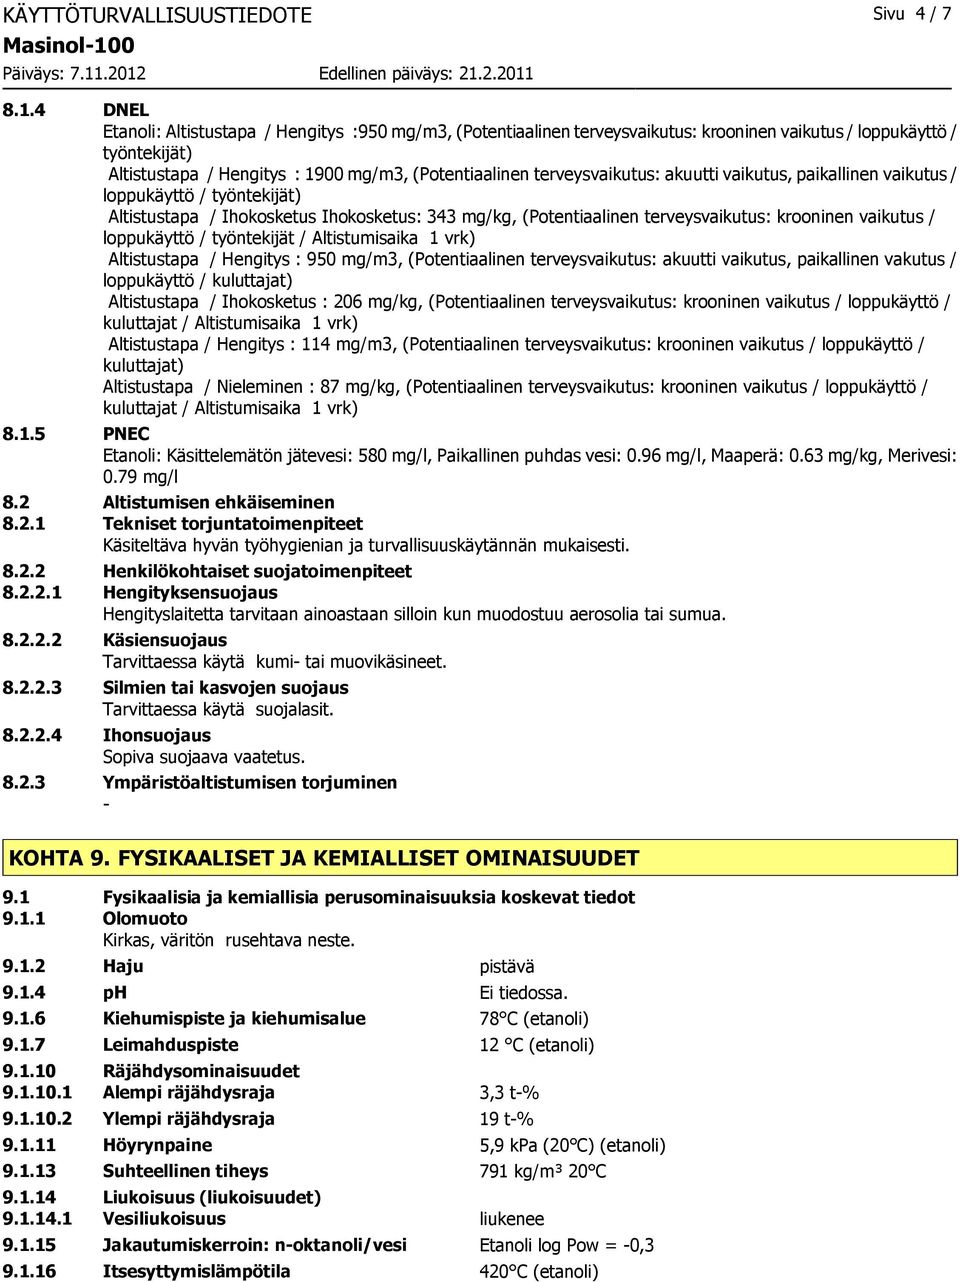 4 DNEL Etanoli: Altistustapa / Hengitys :950 mg/m3, (Potentiaalinen terveysvaikutus: krooninen vaikutus / loppukäyttö / työntekijät) Altistustapa / Hengitys : 1900 mg/m3, (Potentiaalinen